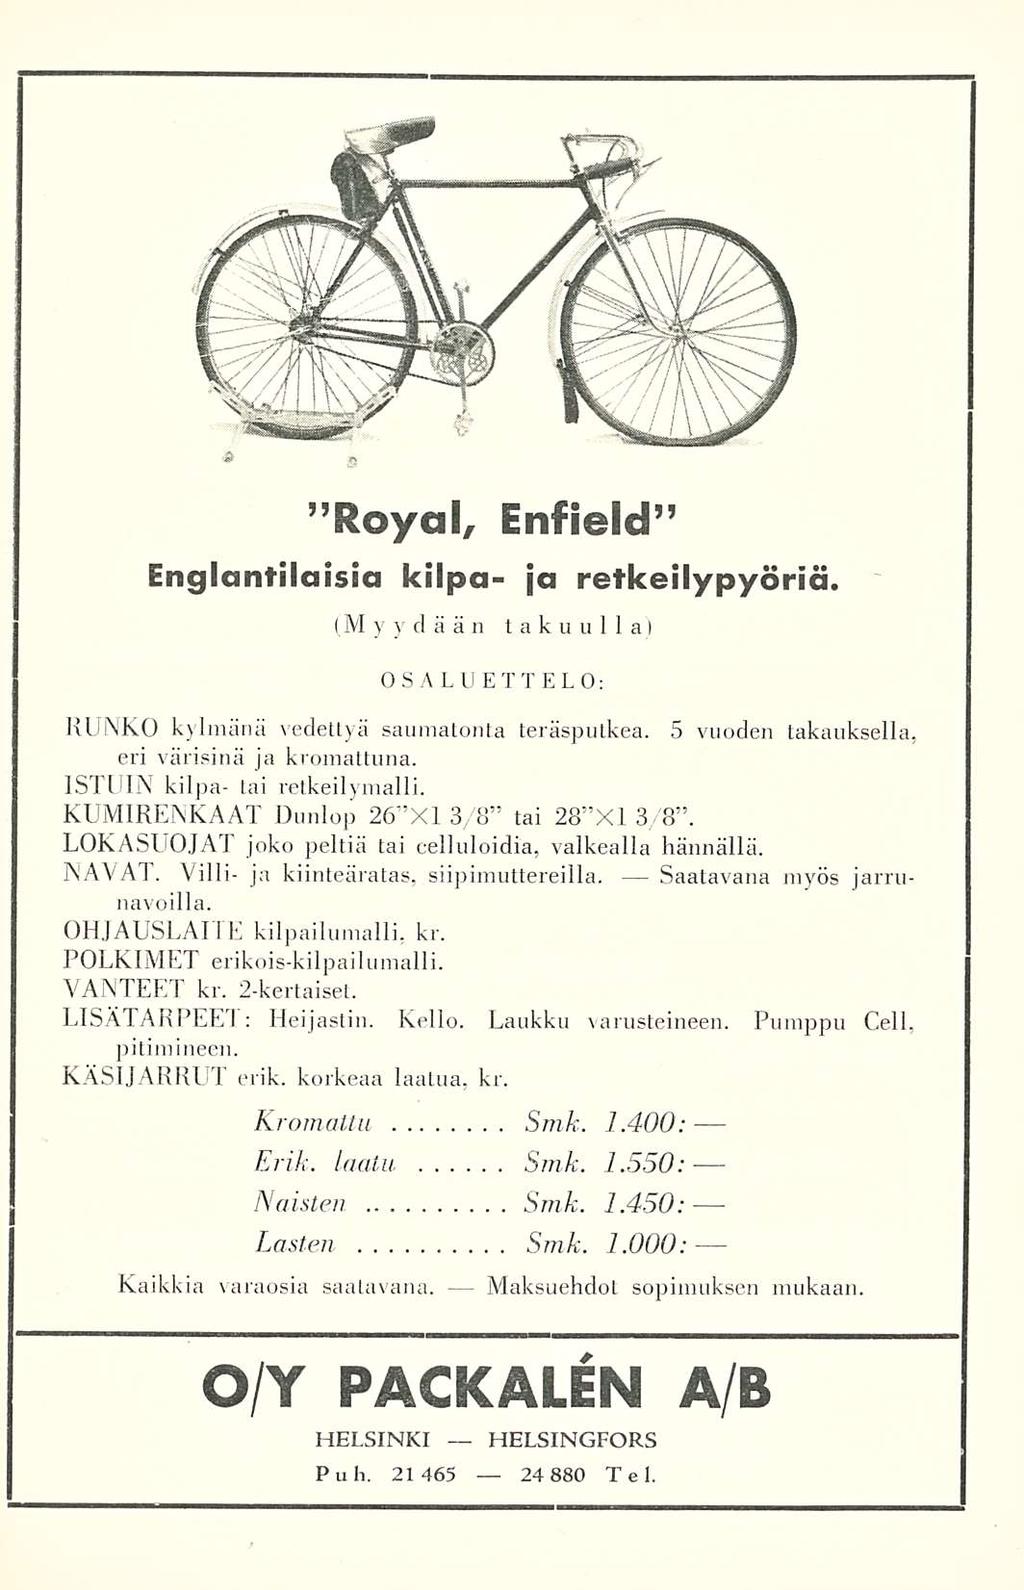 ''Royal, Enfield Englantilaisia kilpa- ja retkeilypyöriä. (M yydään takuulla) OSALUETTELO: RUNKO kylmänä vedettyä saumatonta teräsputkea. 5 vuoden takauksella, eri värisinä ja kromattuna.